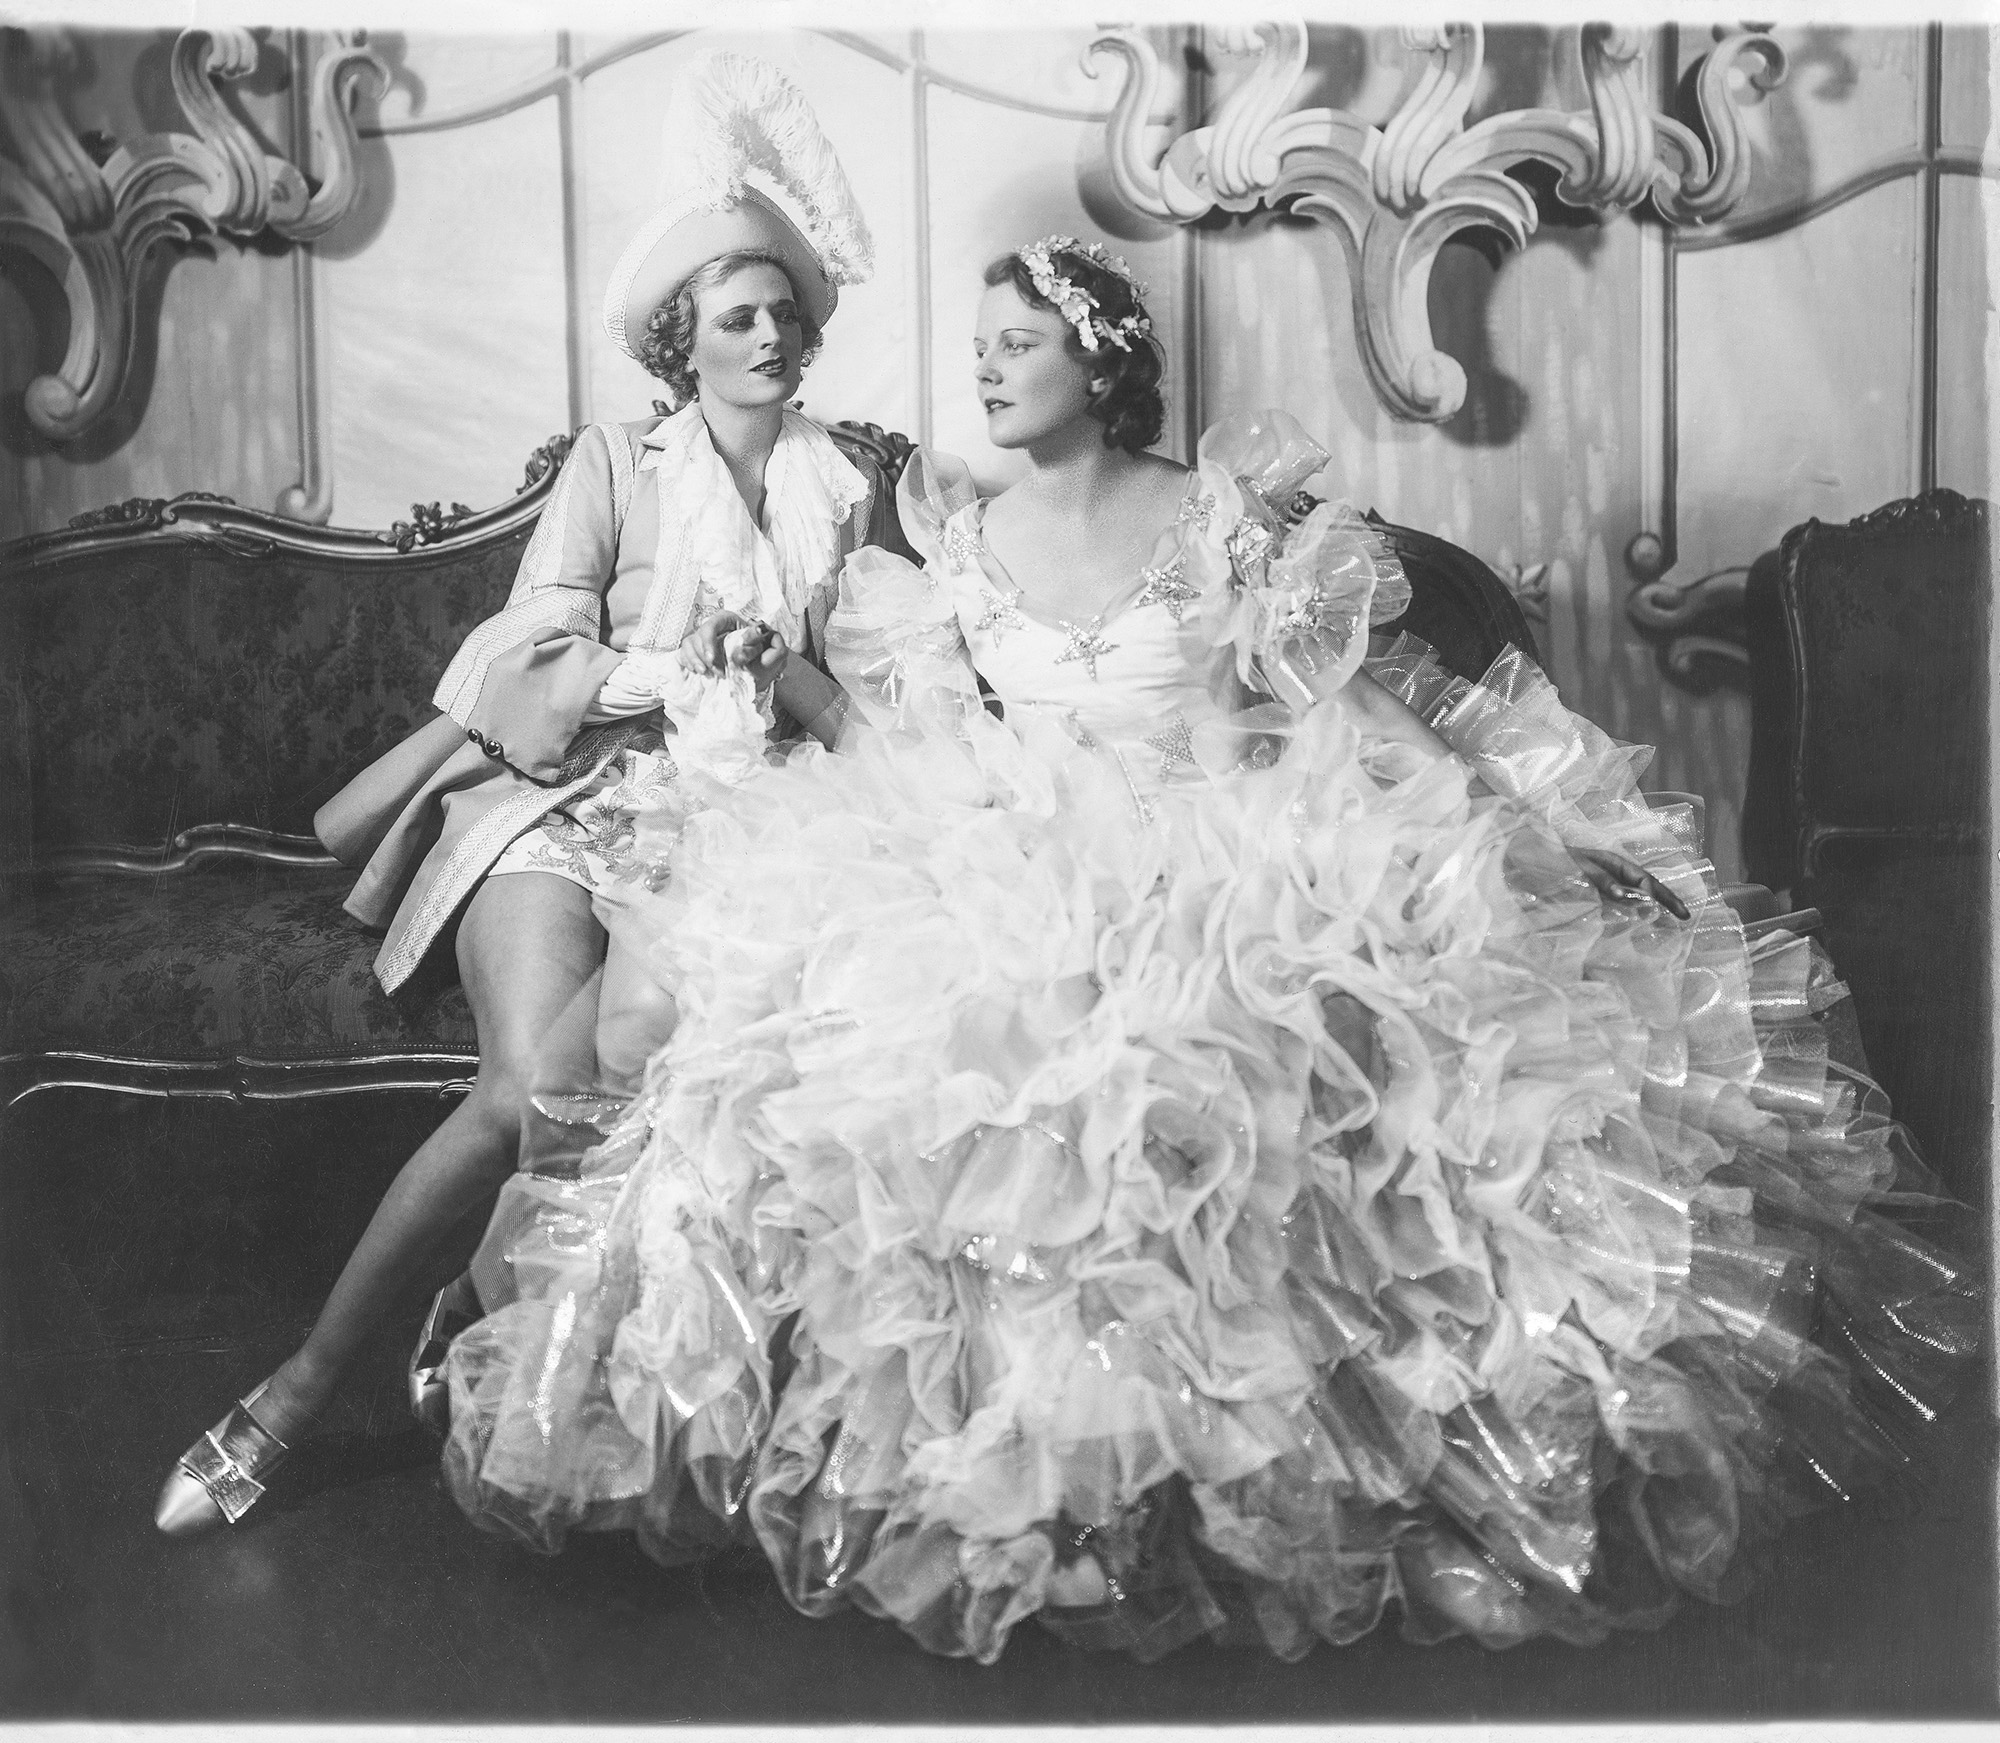 Dos mujeres sentadas en un sofá, uno con vestido de fiesta